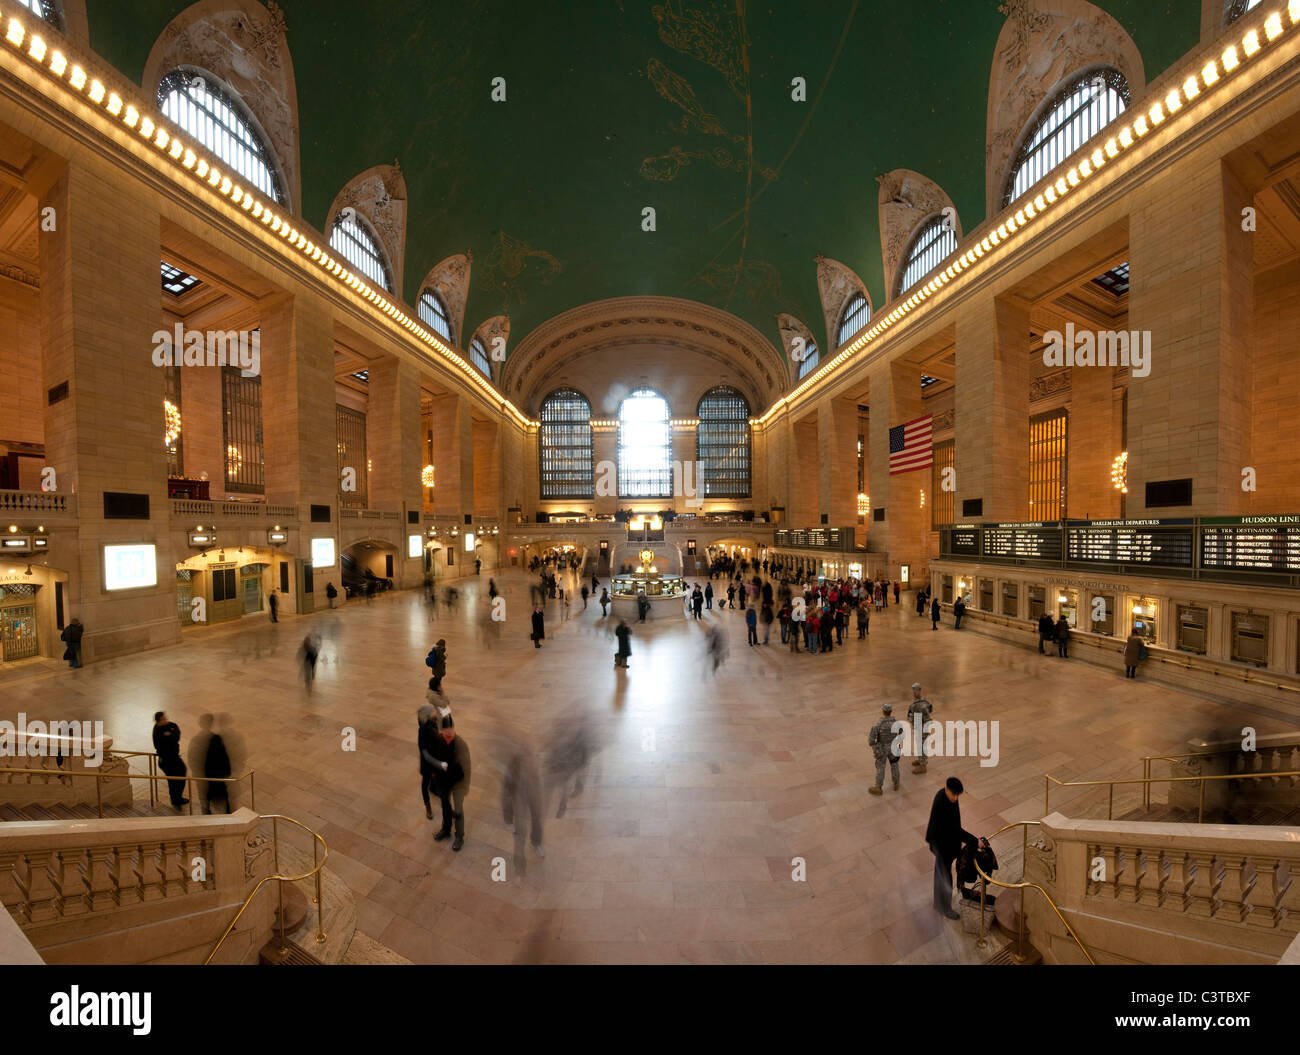 2011. Grand Central Terminal. La Grand Central Station. Foto panoramica composta da tre immagini cuciti insieme. Foto Stock